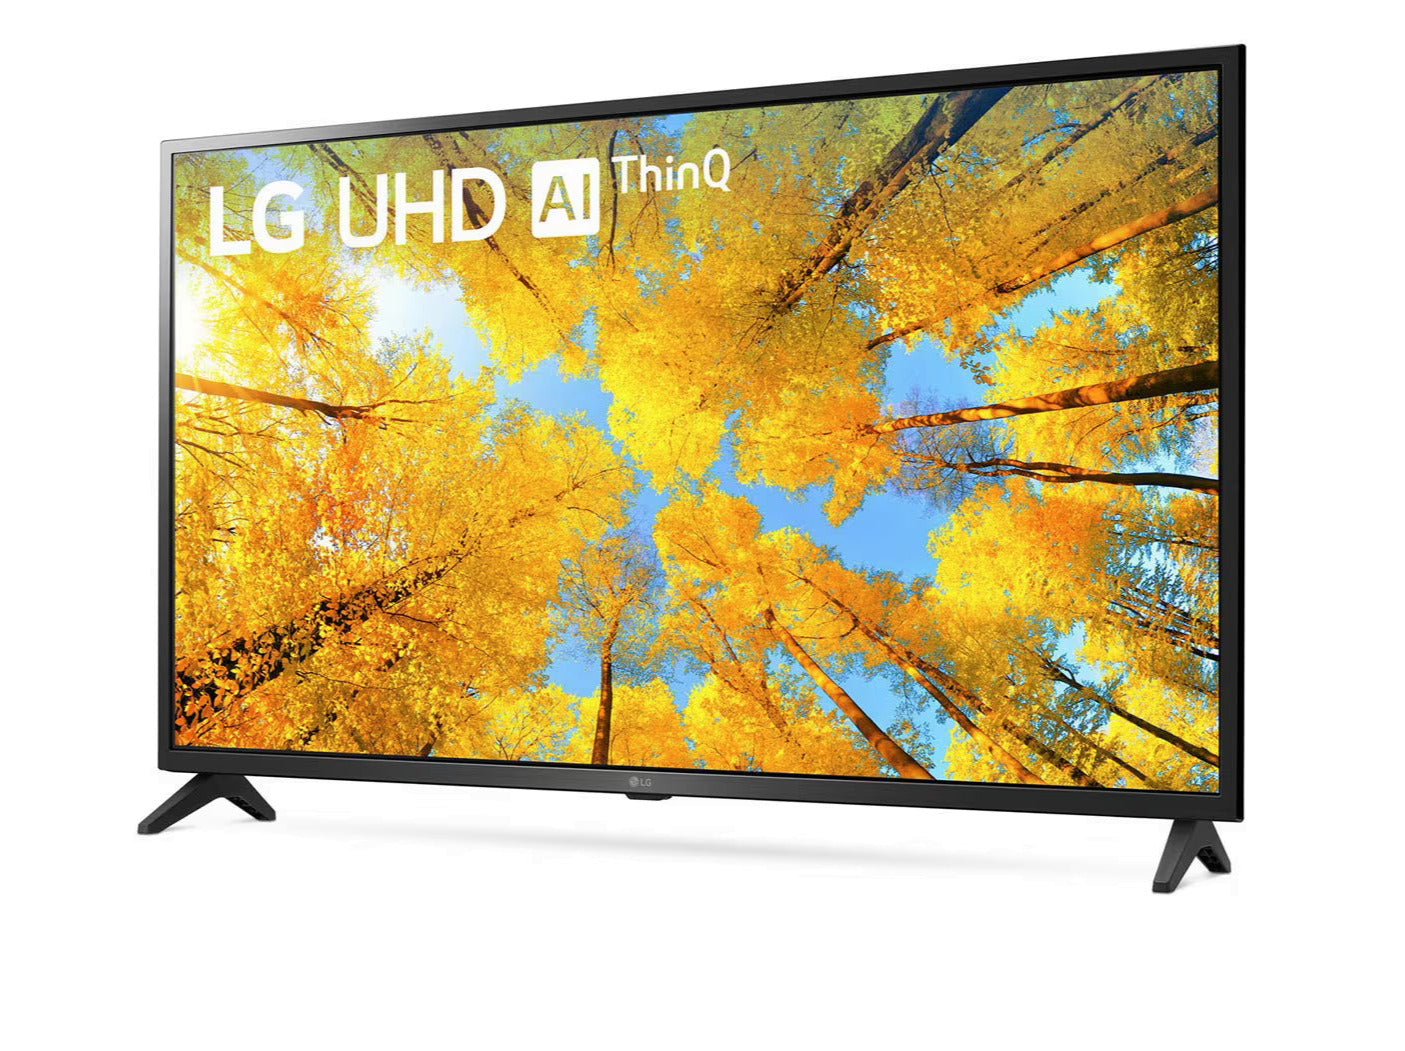 LG 43UQ7500 4K Smart TV előlnézetben enyhén balra fordítva, talpon. A kijelzőn őszies sárga levelű fák és lg uhd thinq ai logó.